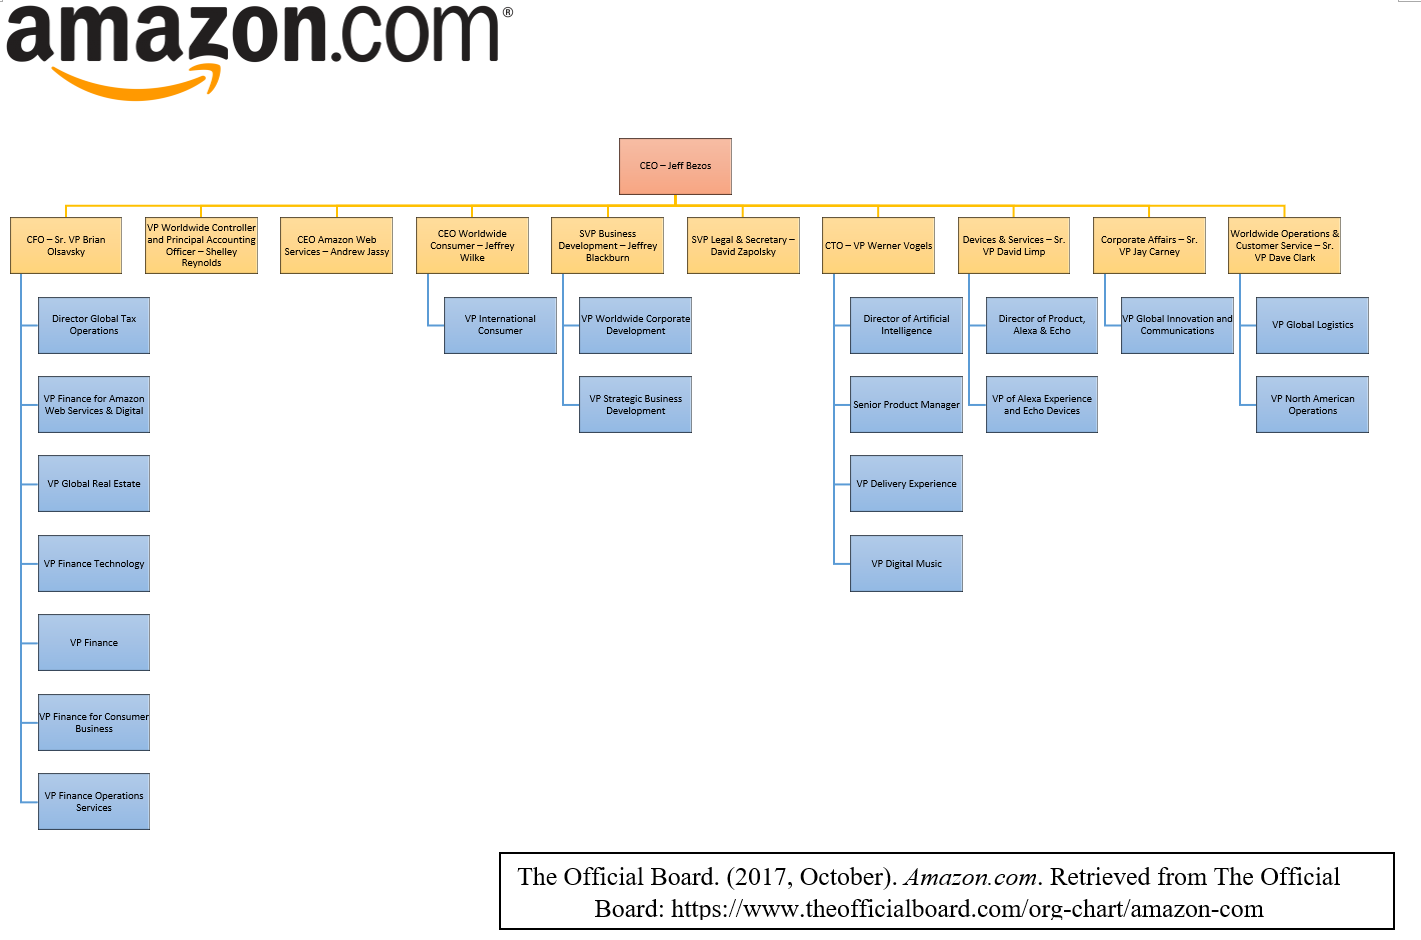 Amazon Organizational Chart 2017